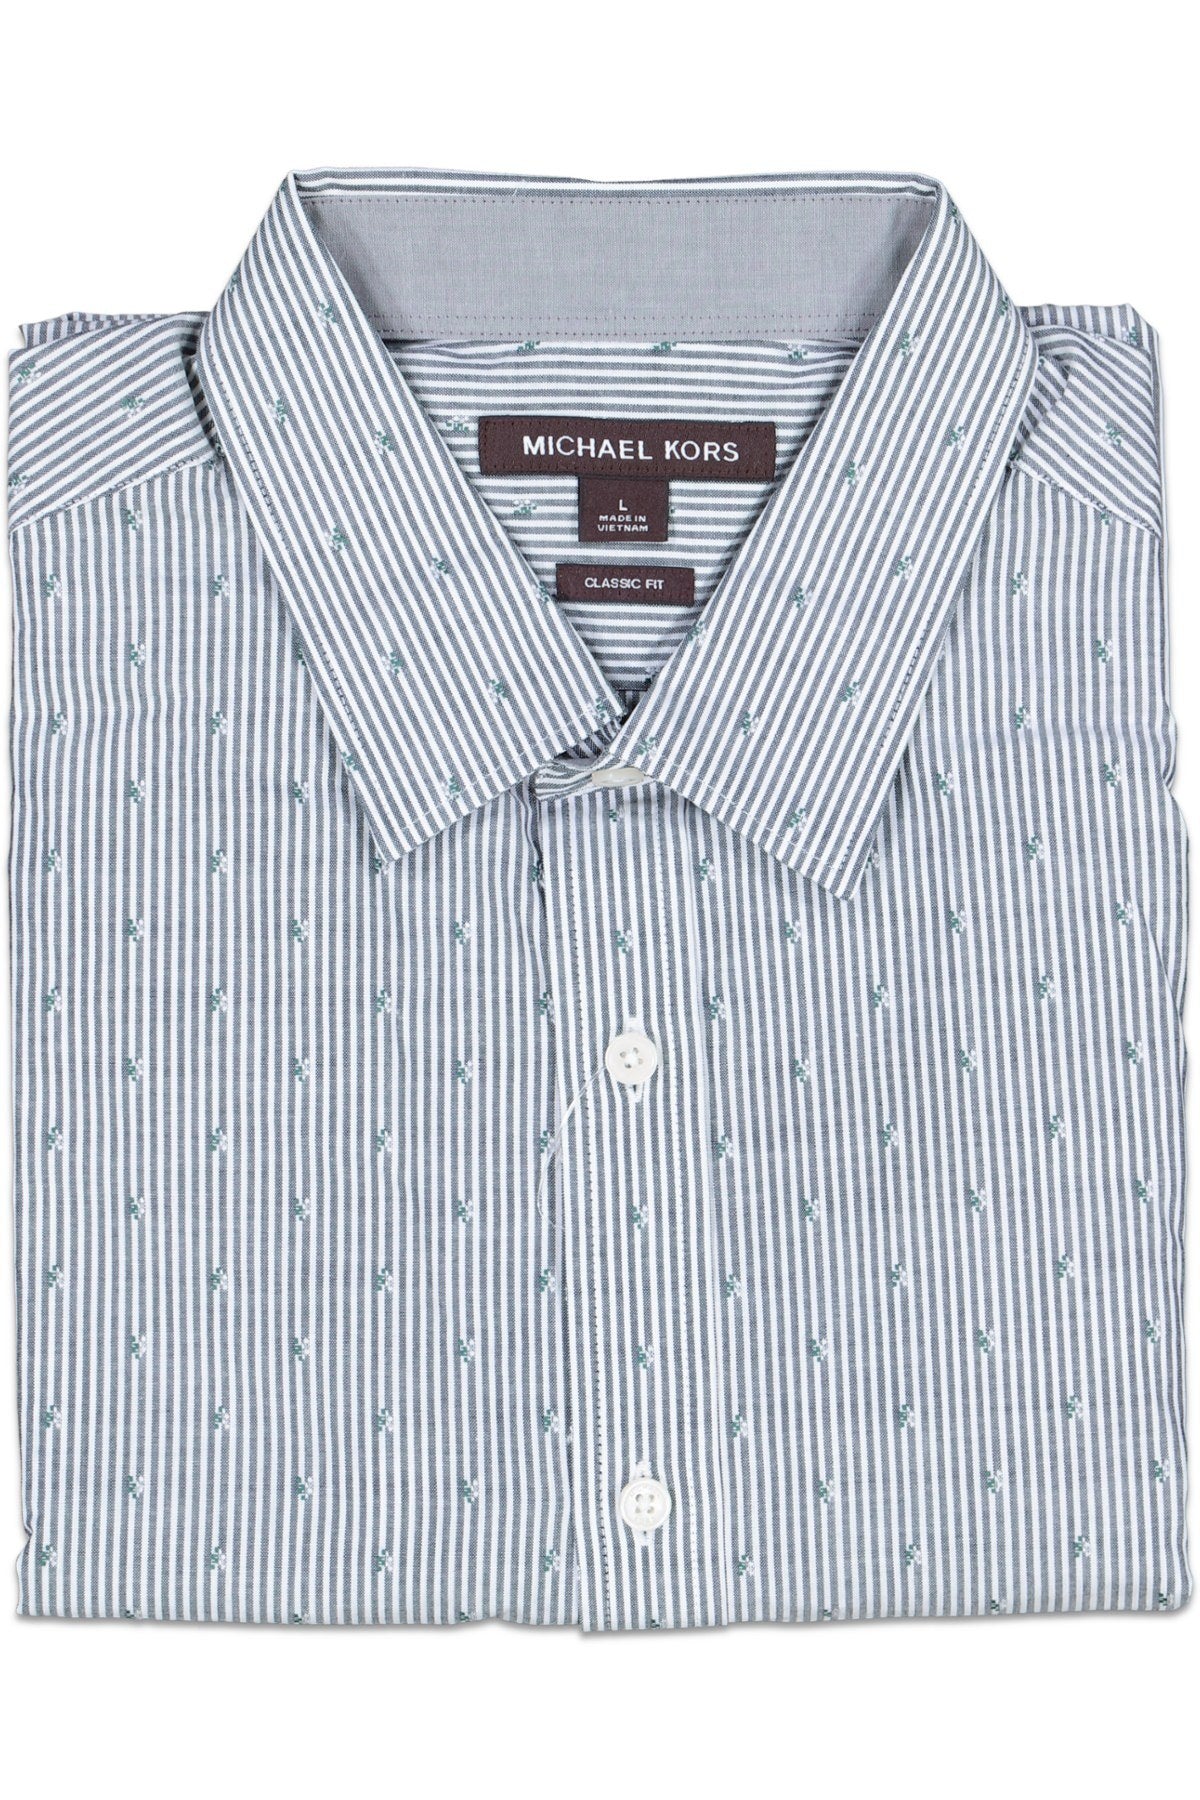 Michael Kors Striped Blue Gray Medium Button Front Shirt